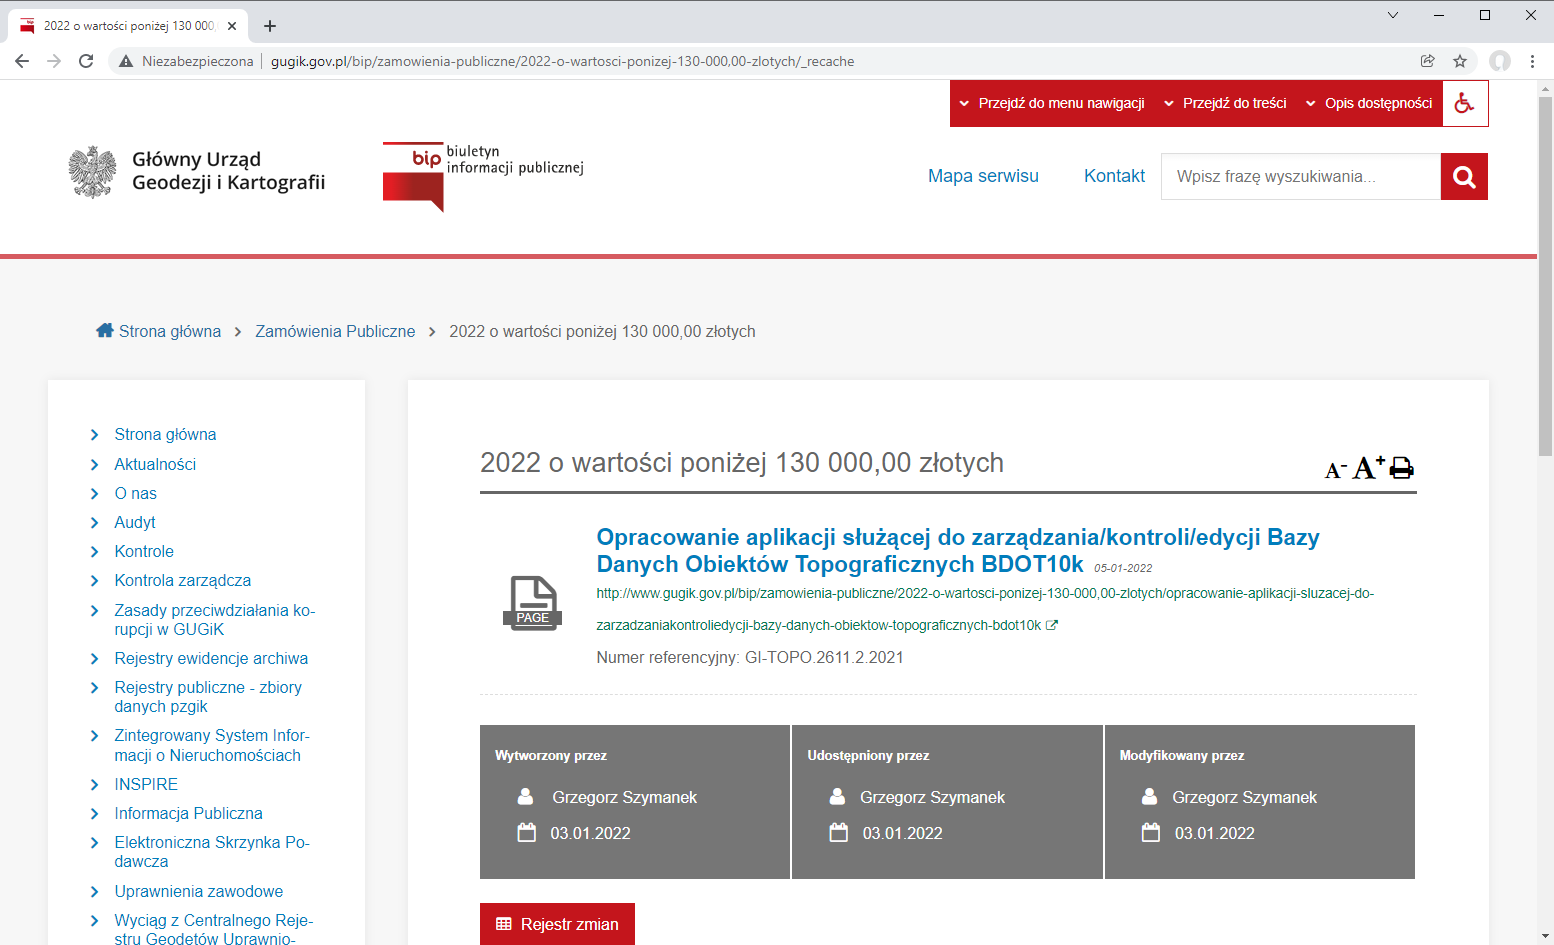 Rysunek przedstawia zrzut ekranu z serwisu BIP GUGIK przedstawiający opublikowane ogłoszenie o konkursie na aplikację do zarządzania/kontroli/edycji danych BDOT10k.